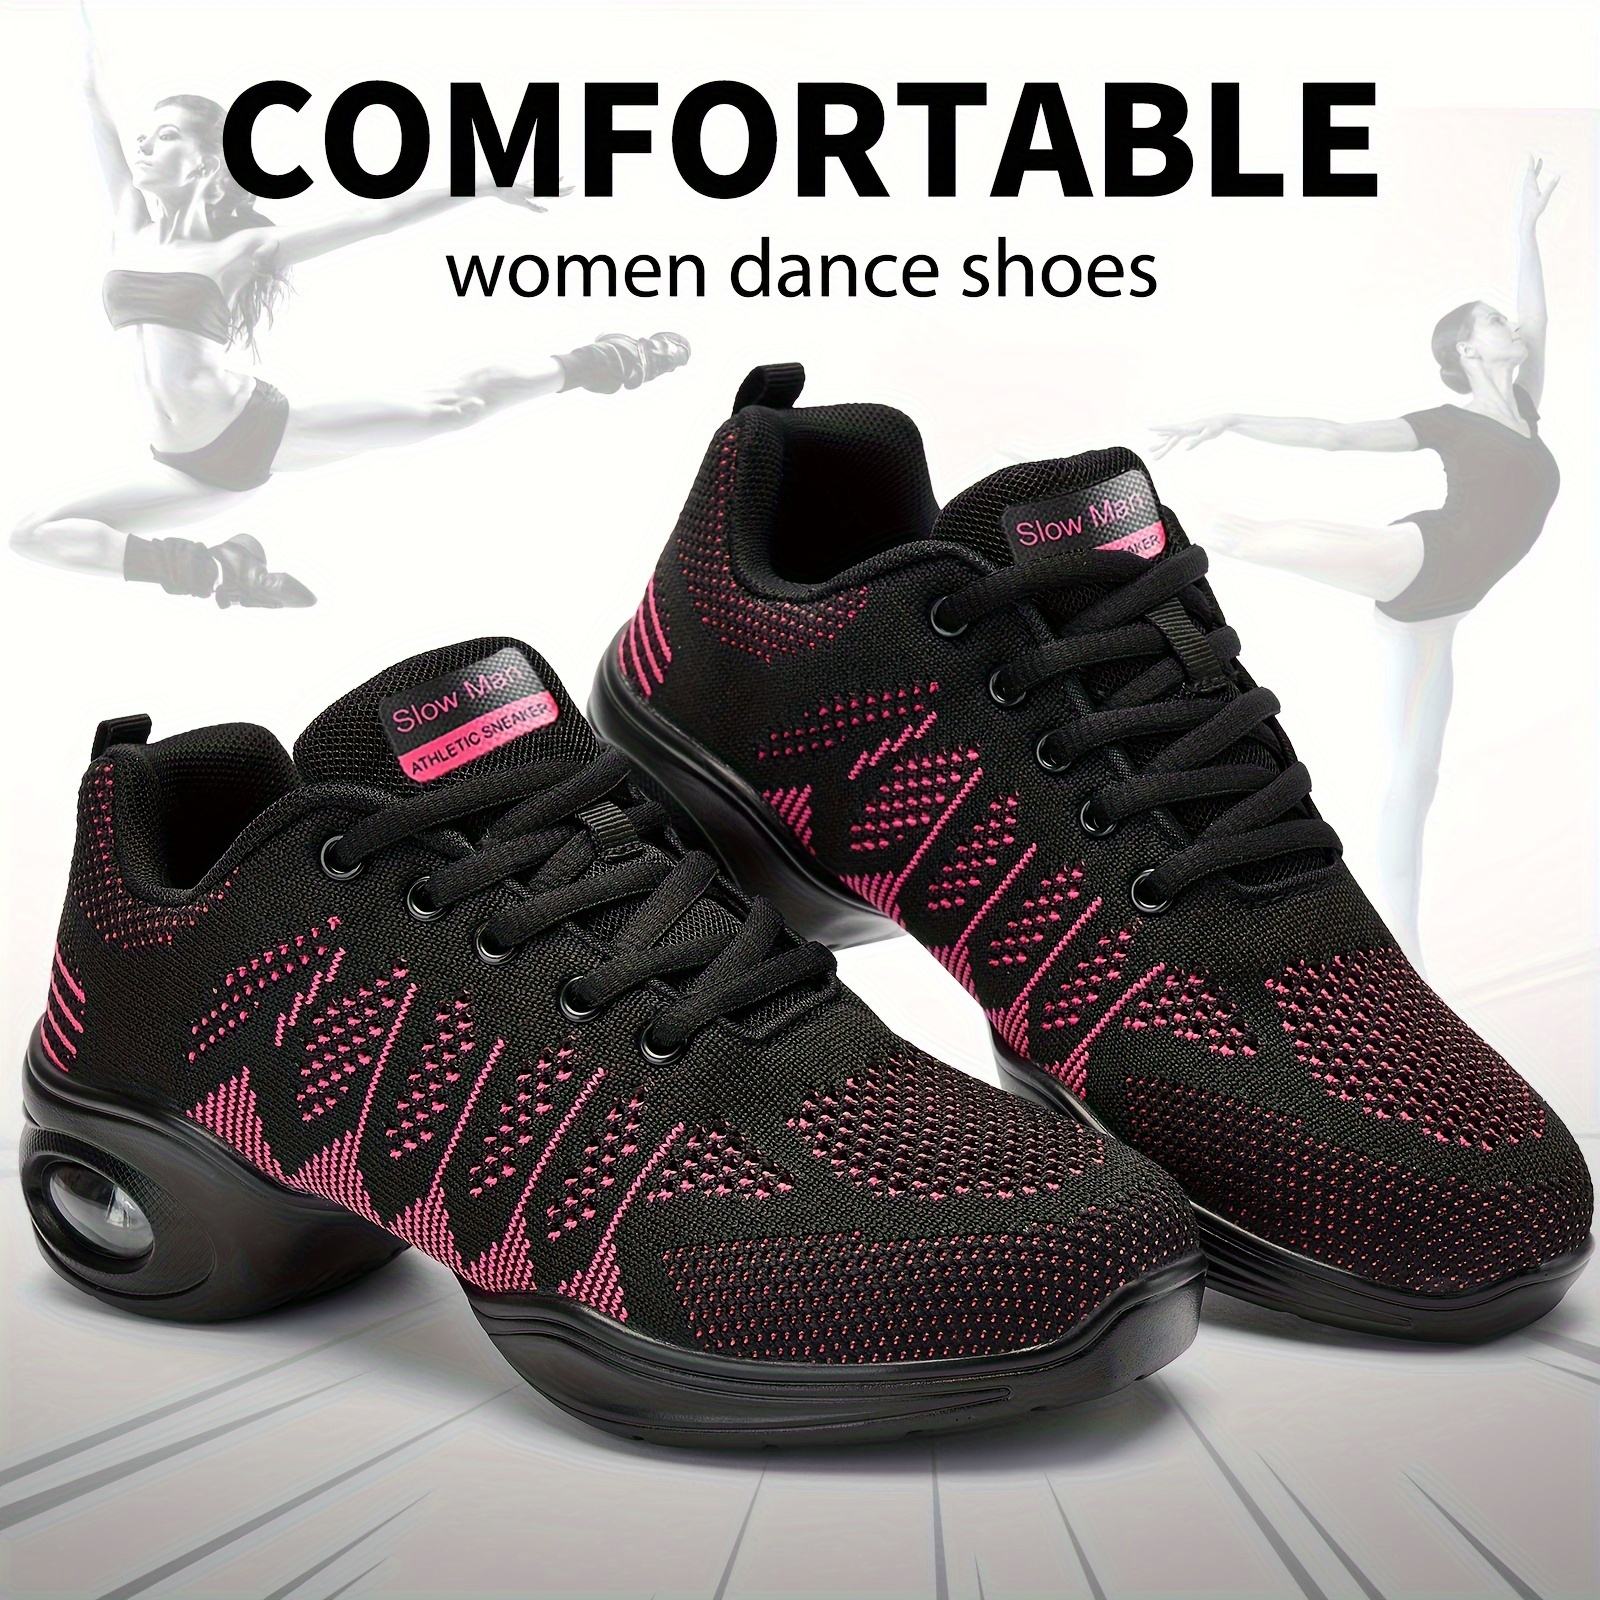 Women's Jazz Shoes Lace-up Morden Dance Shoes Breathable Mesh Air Cushion  Lady Split Sole Platform Dance Sneakers 